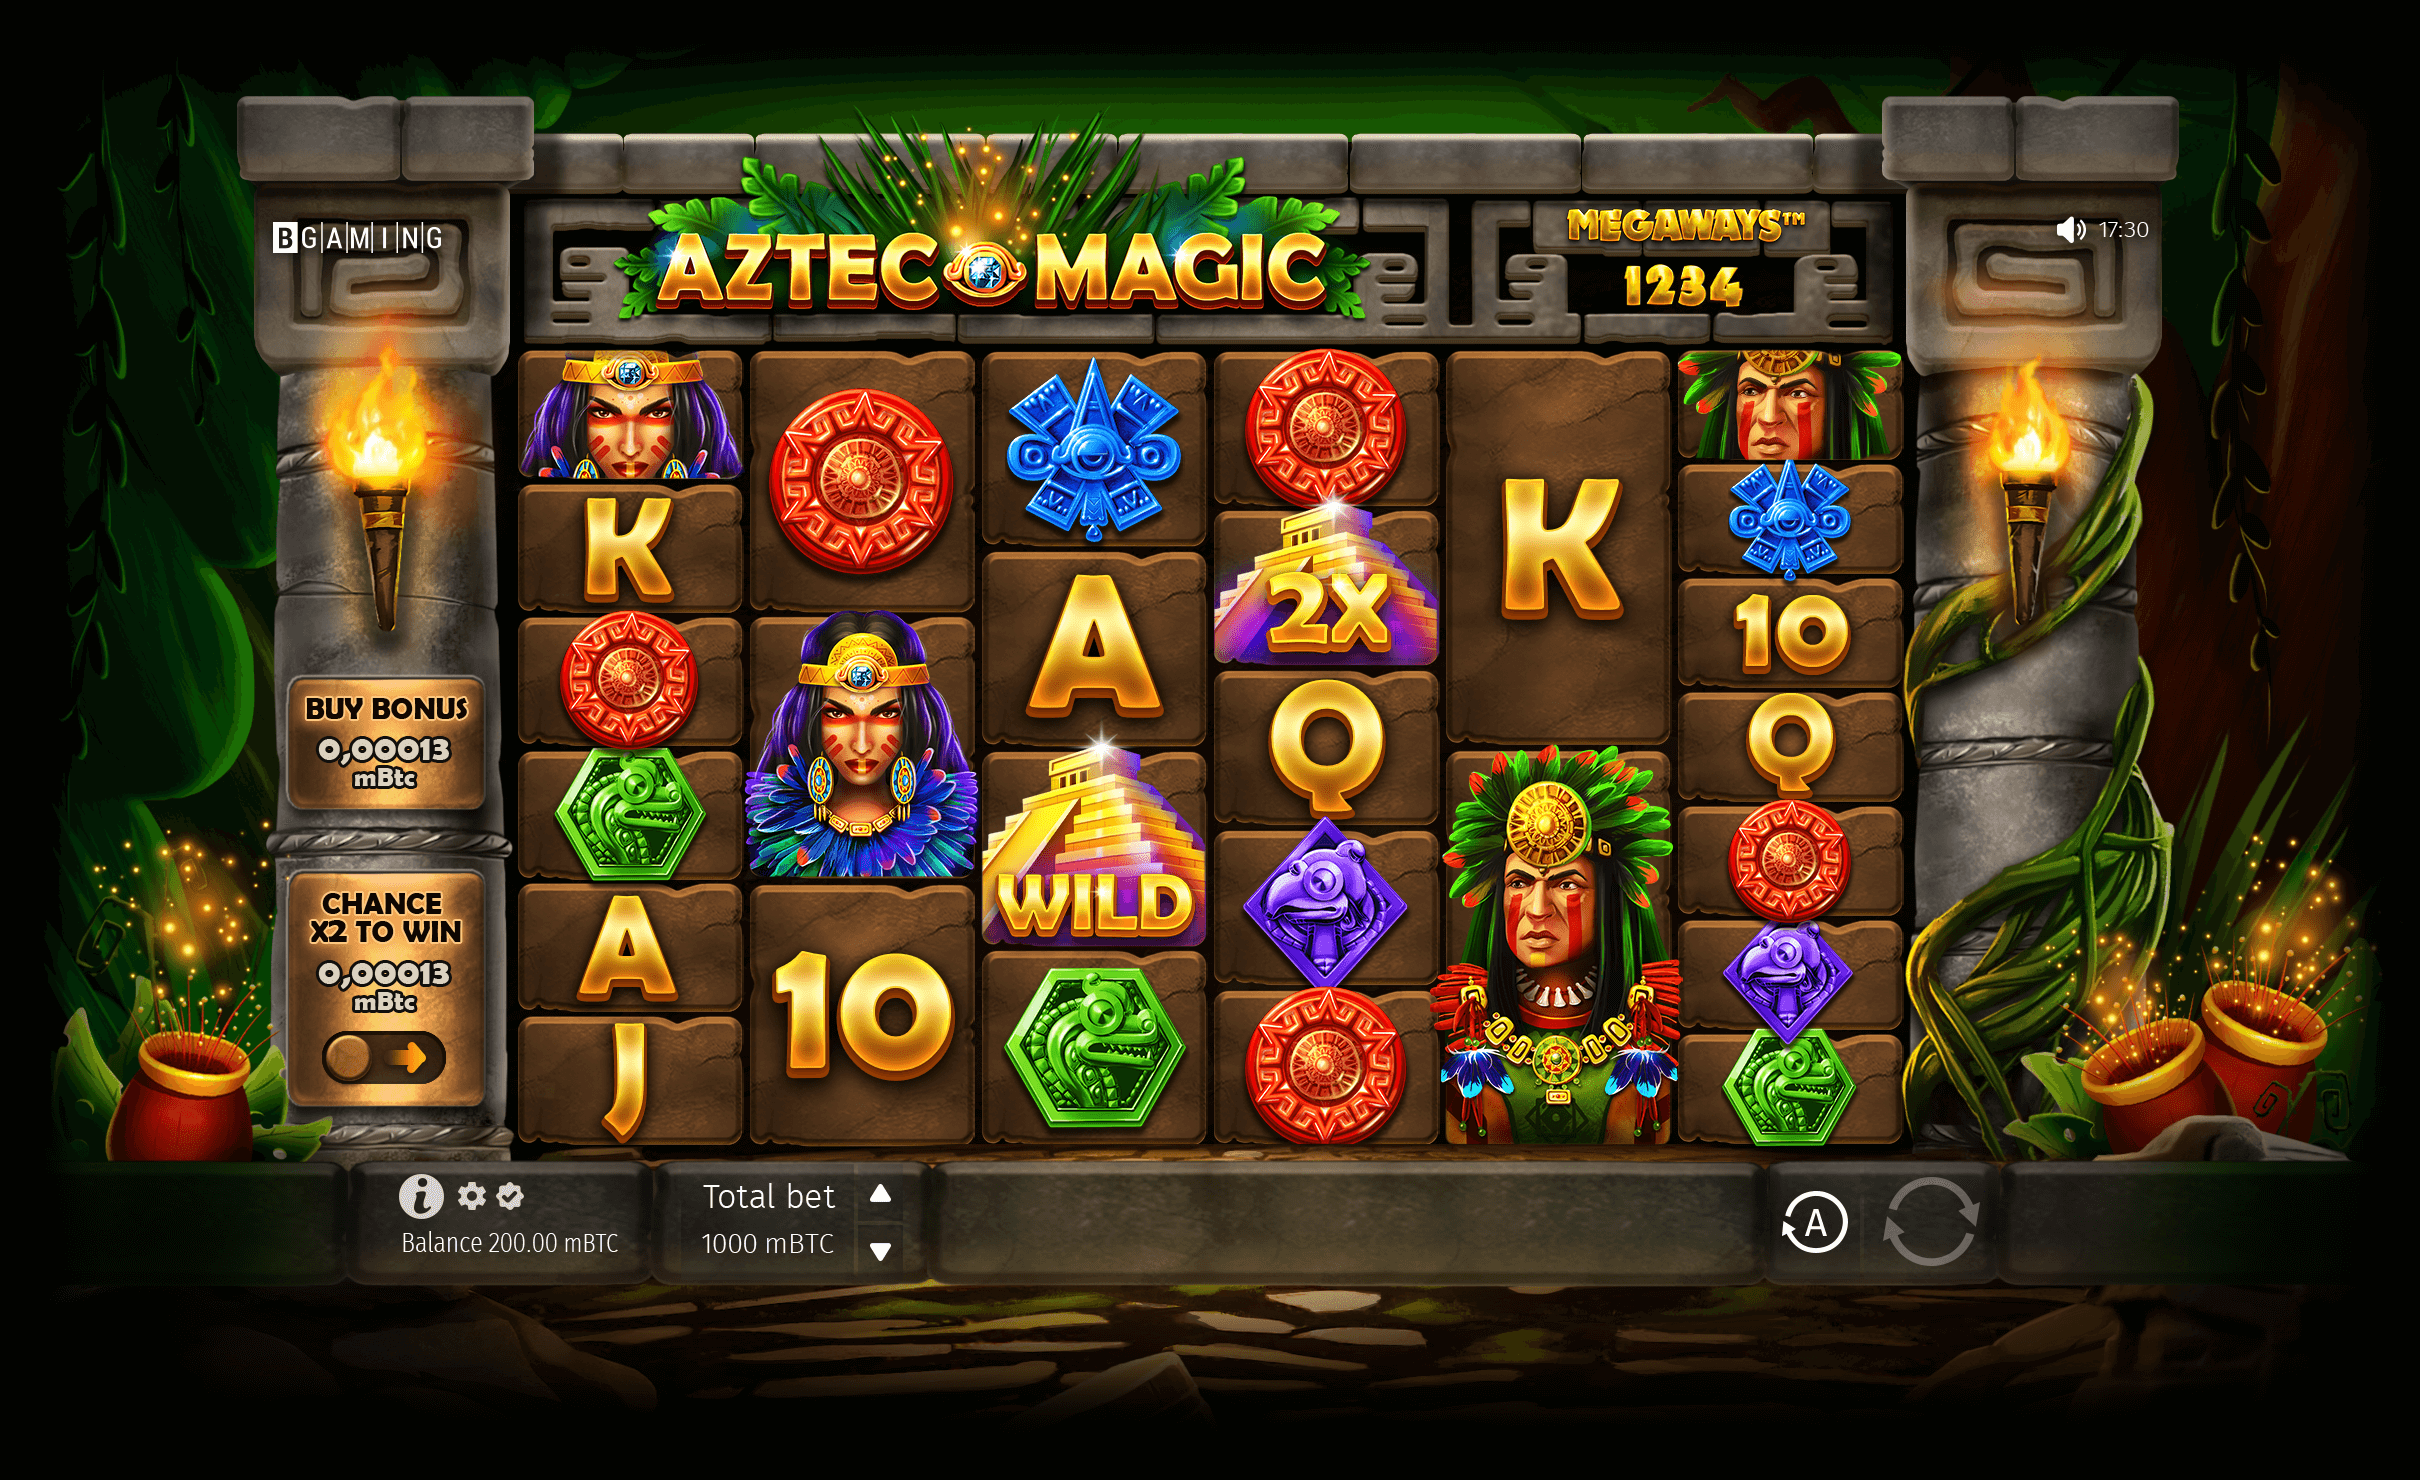 Aztec Magic Megaways slot